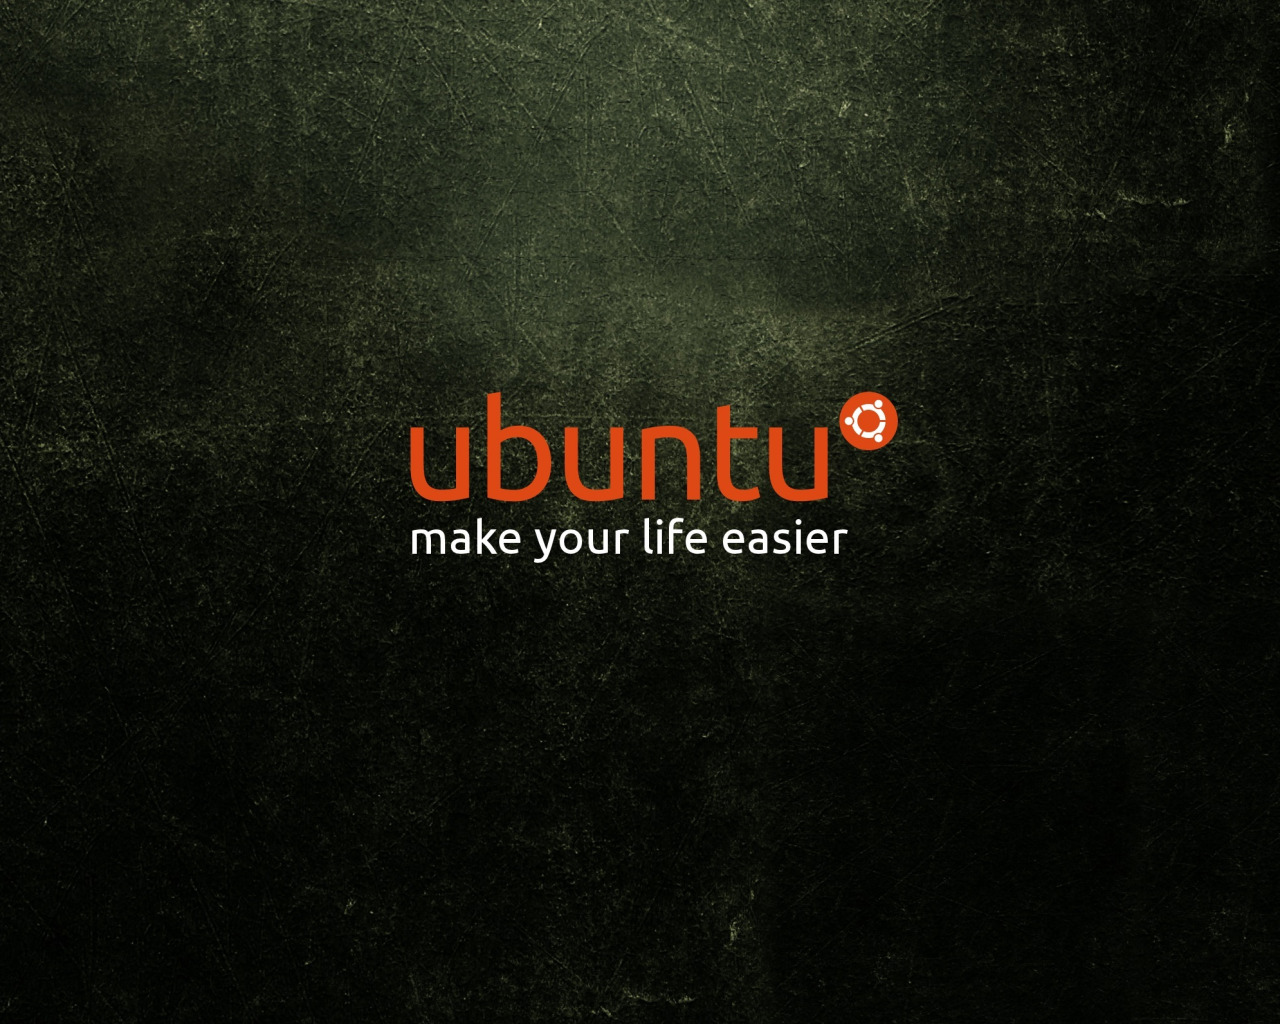 Your life easier. Обои Linux Ubuntu. Обои на рабочий стол Ubuntu. Обои на рабочий стол Linux Ubuntu. Обои линукс убунту.